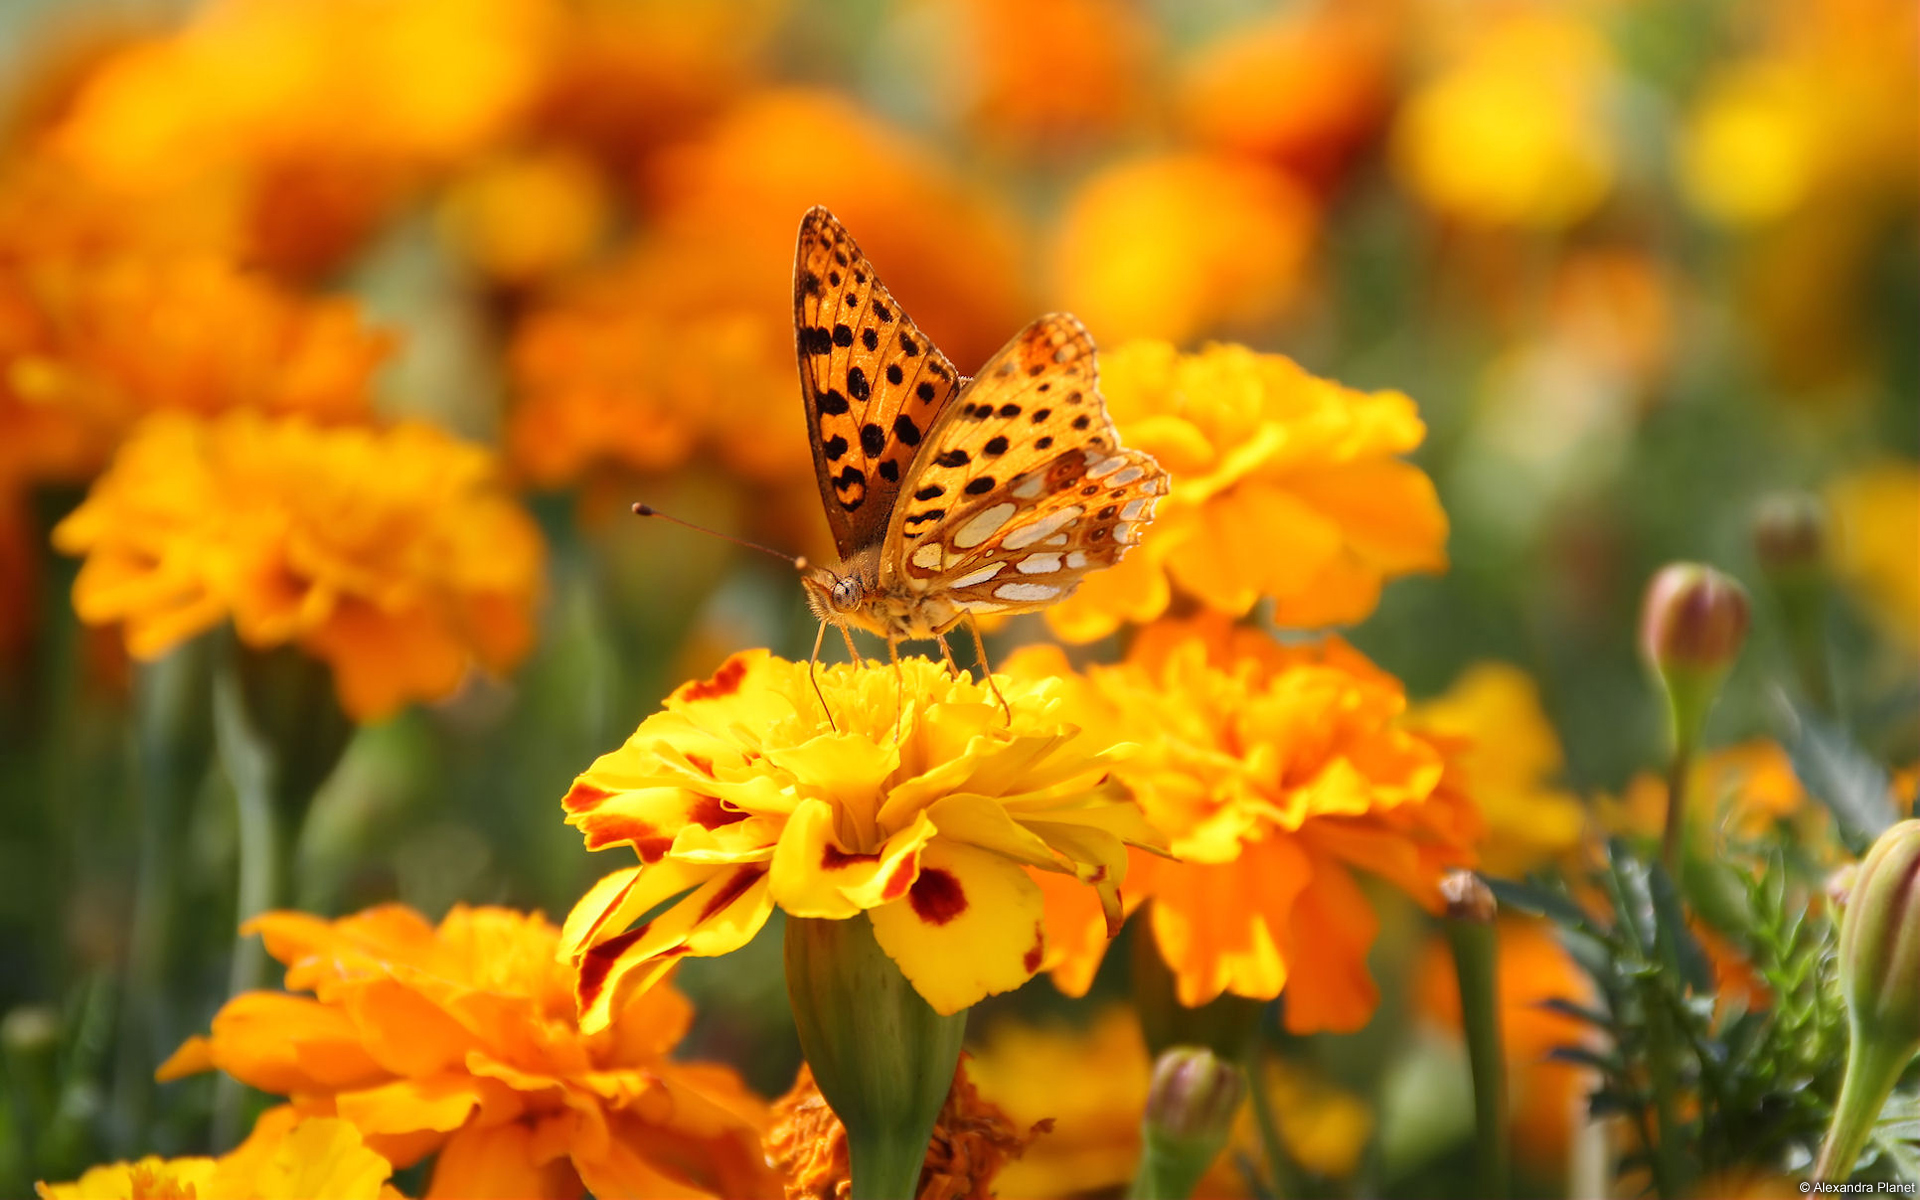 蝴蝶与花朵图片大全 蝴蝶和花的唯美图片